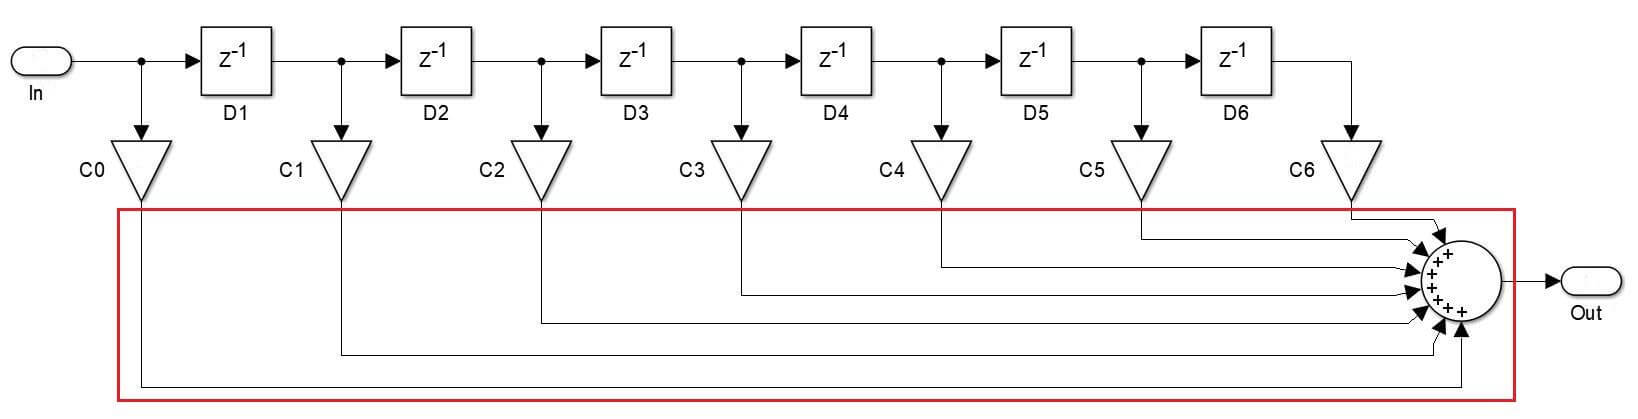 Figure 1: Block diagram of a Direct Form FIR filter 